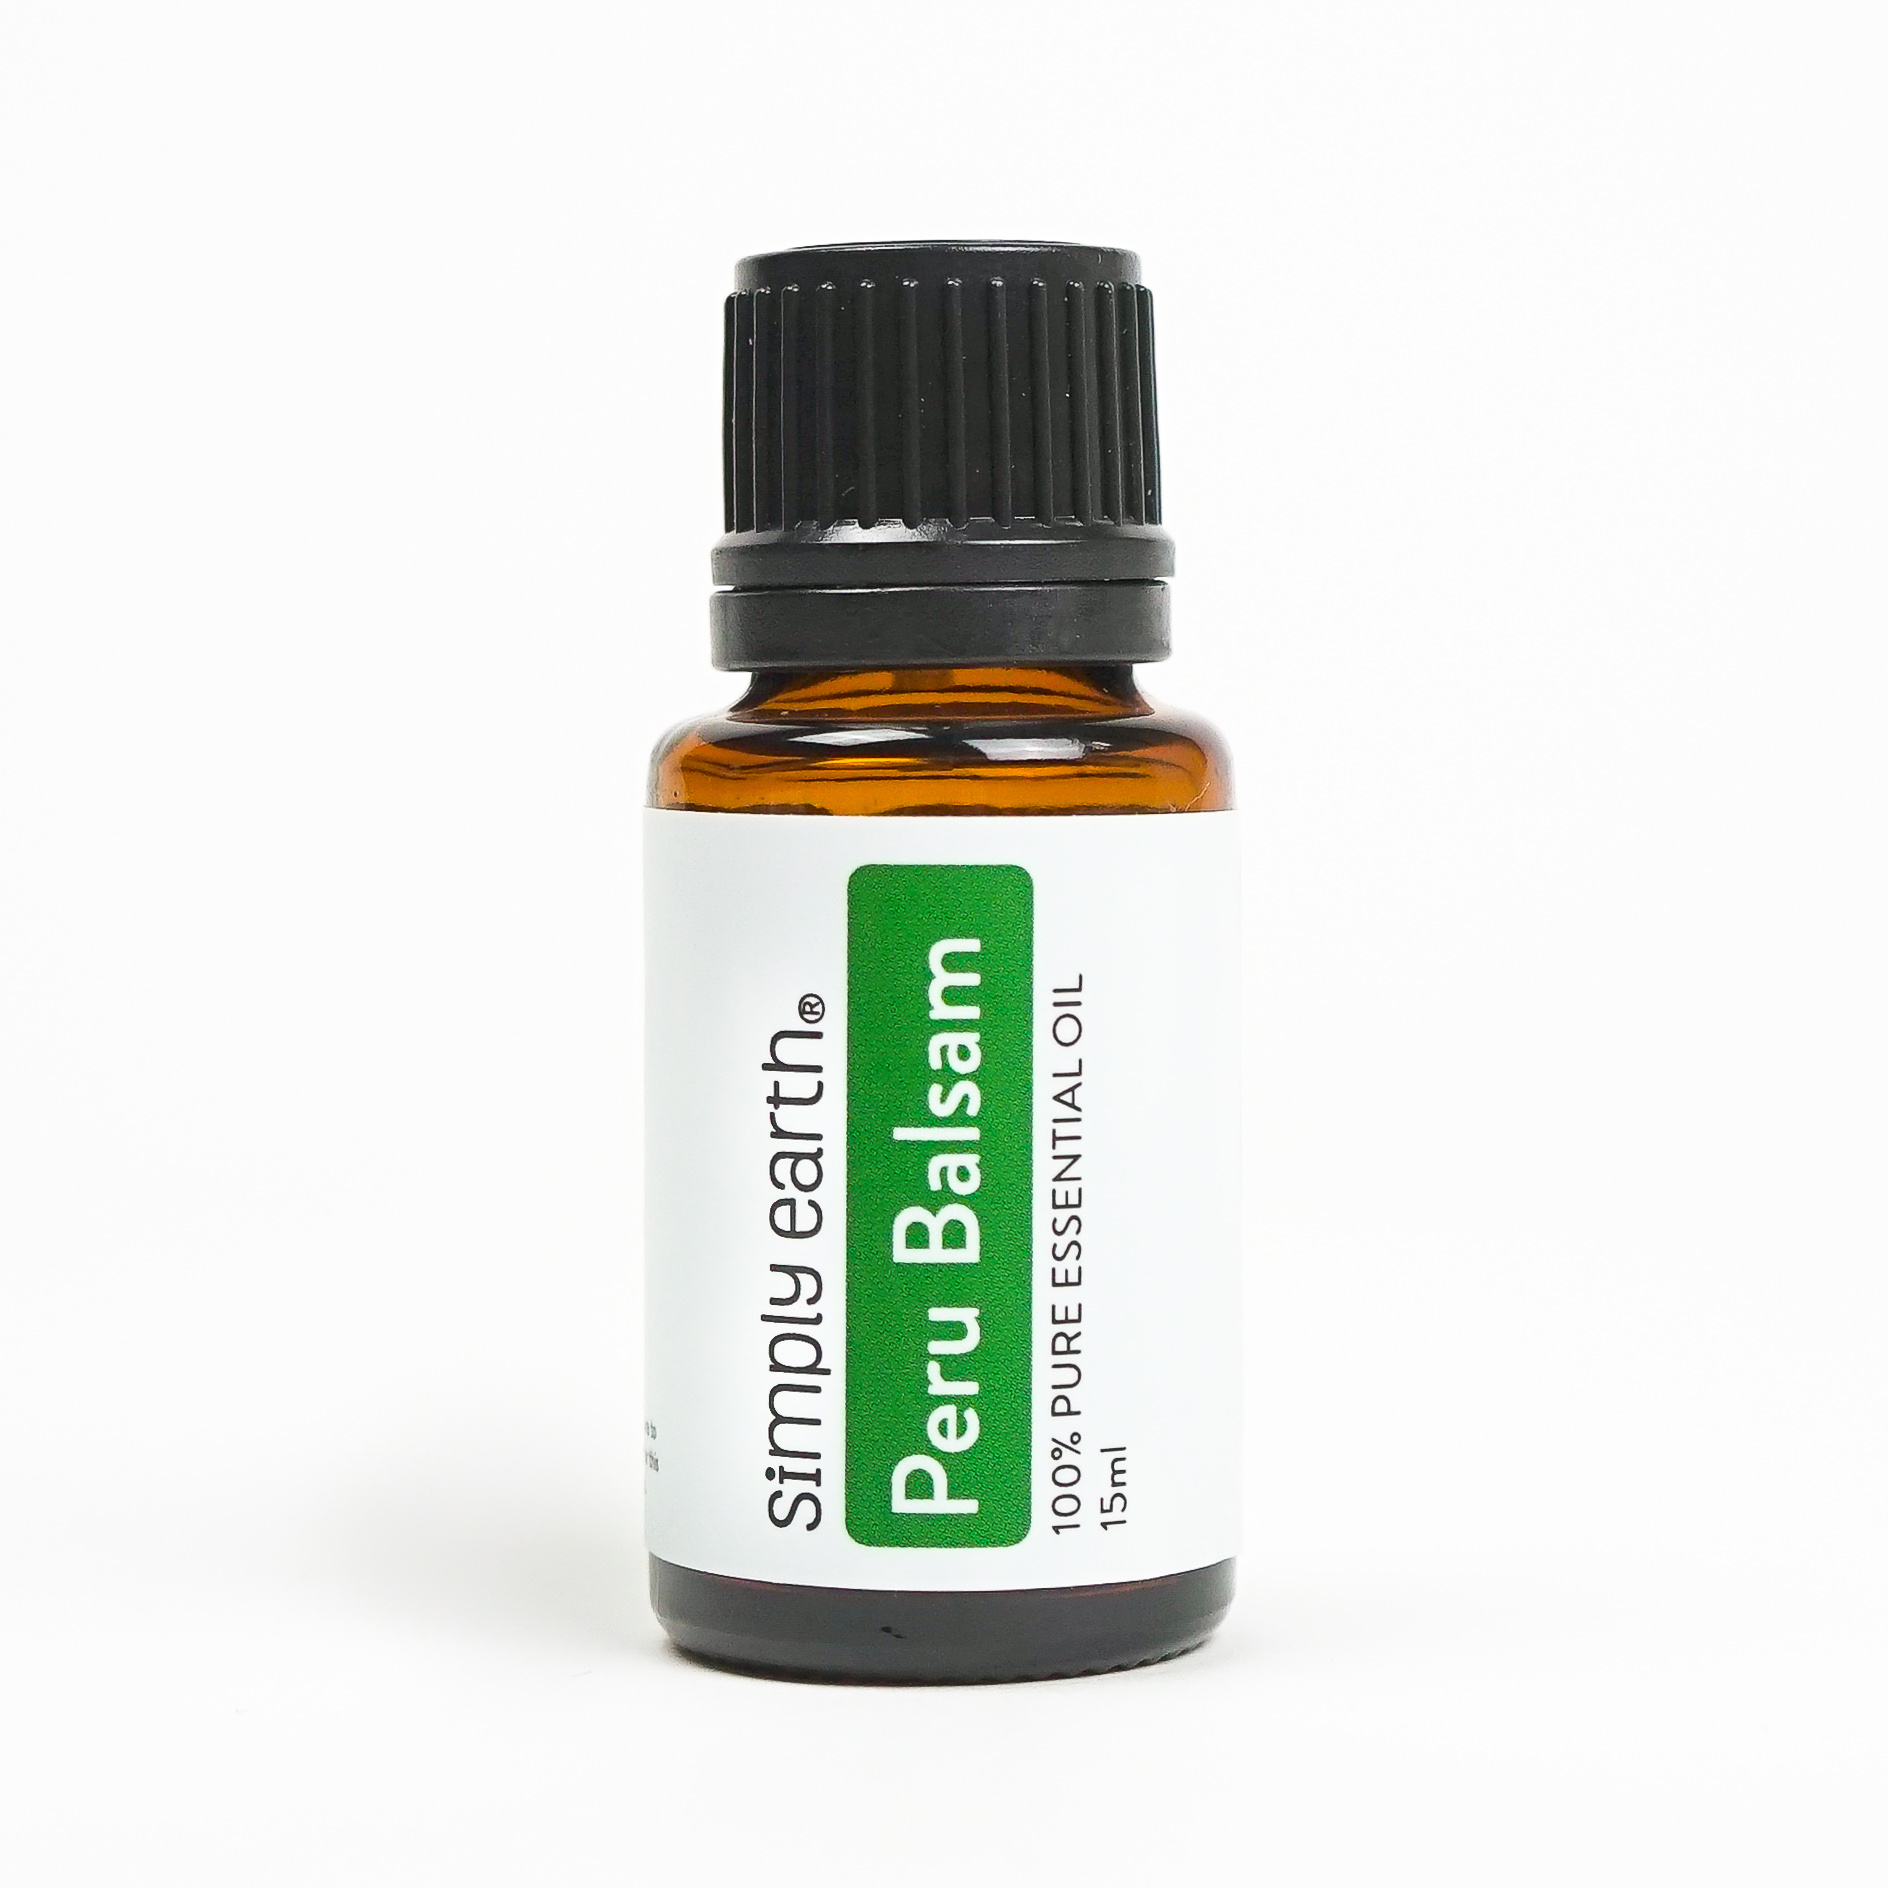 Peru Balsam Essential Oil Size: 15ml